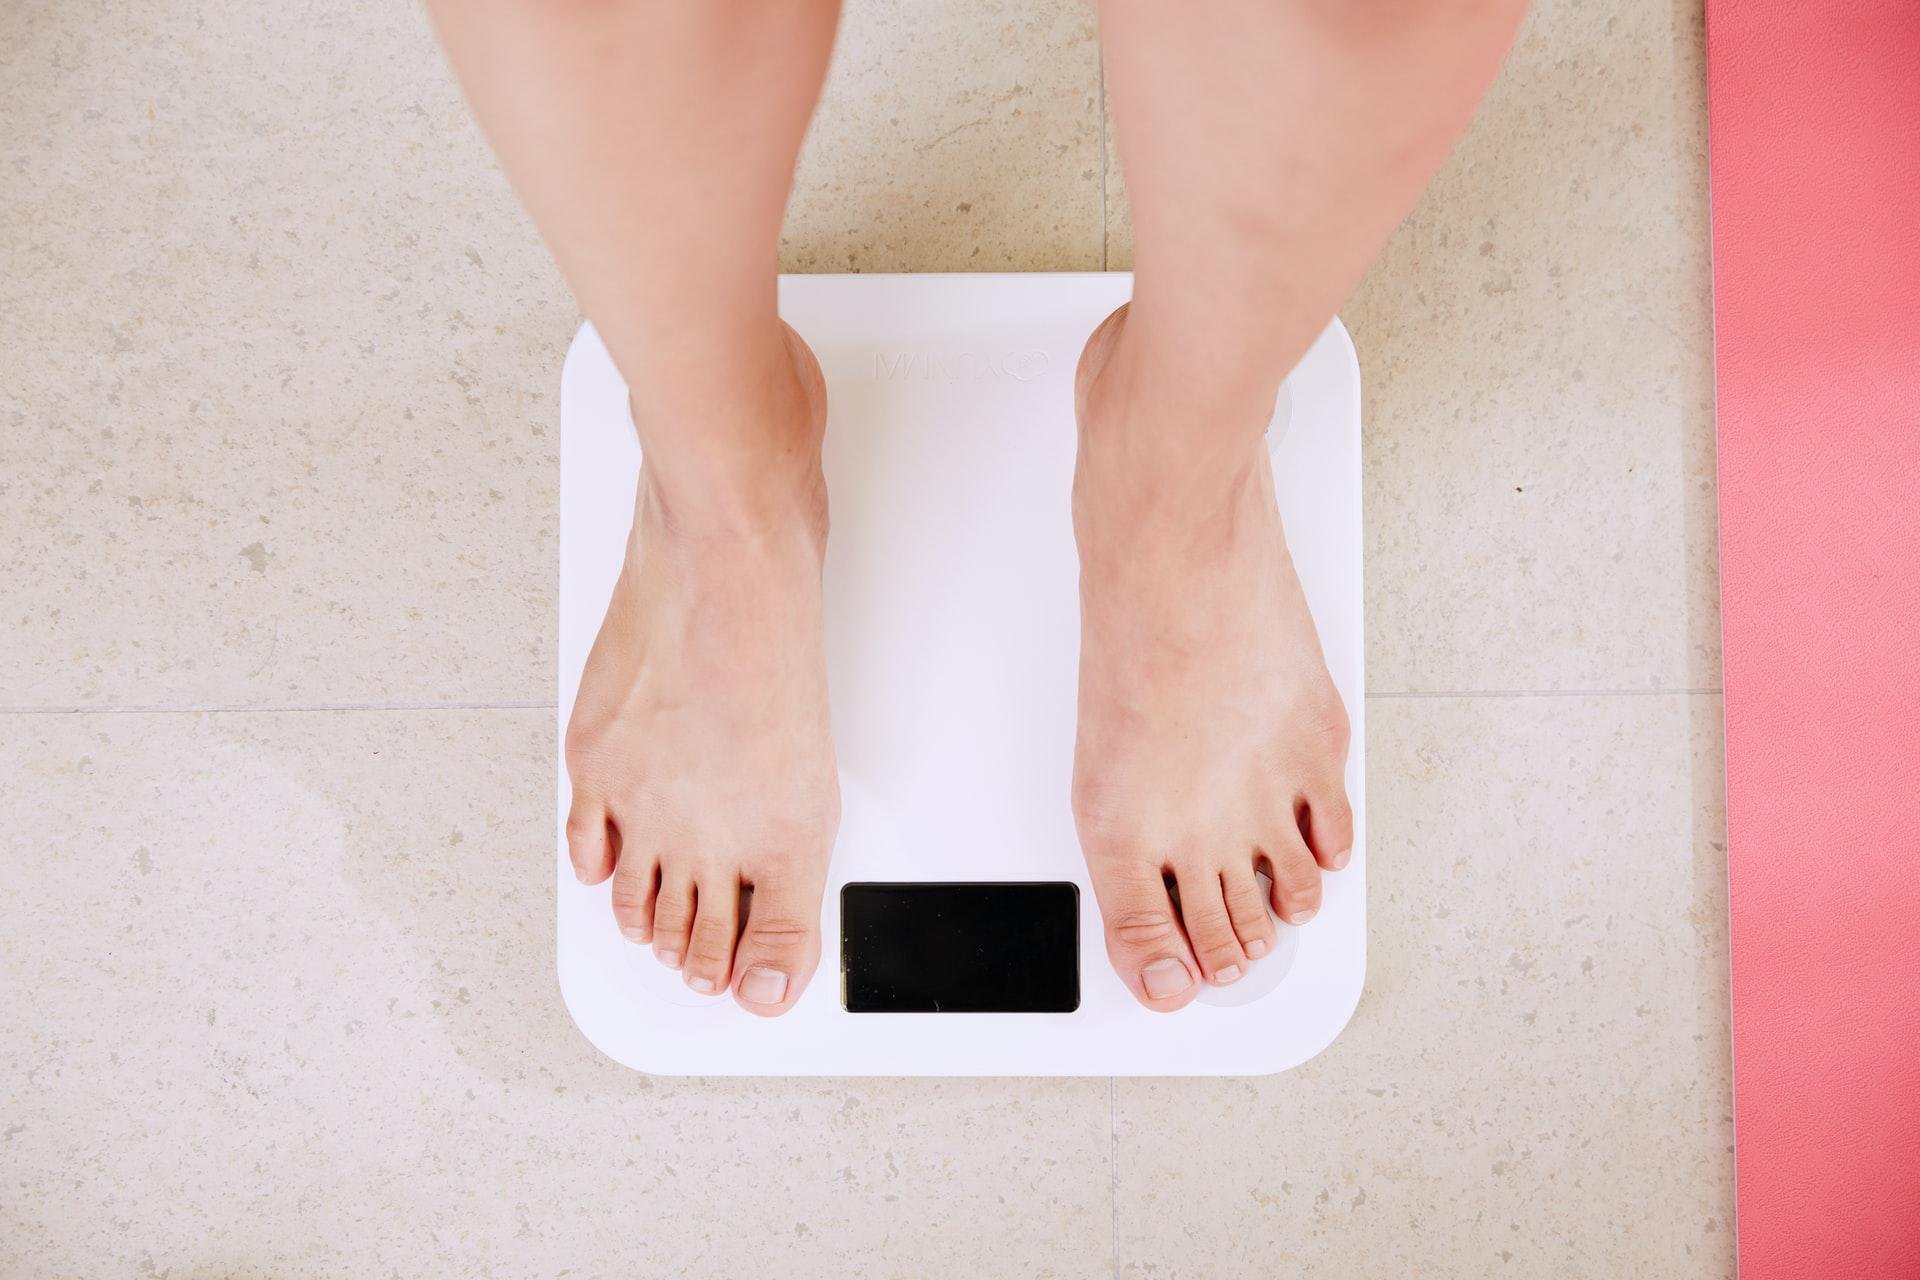 Emagrecimento muitas vezes é confundido com perda de peso, mas não são a mesma coisa (Fonte: Unplahs/i yunmai)